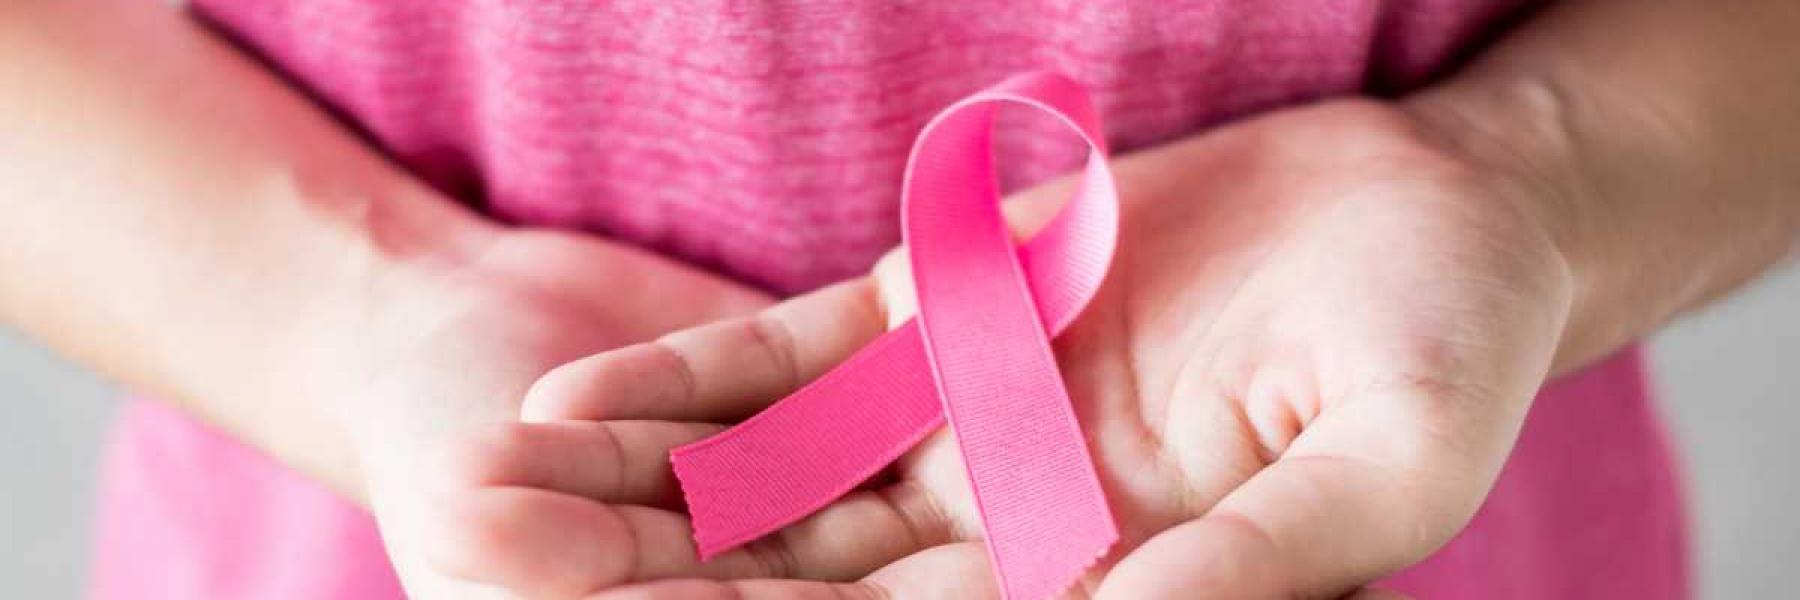 4 أشياء يجب عليك فعلها لتقليل خطر الإصابة بسرطان الثدي